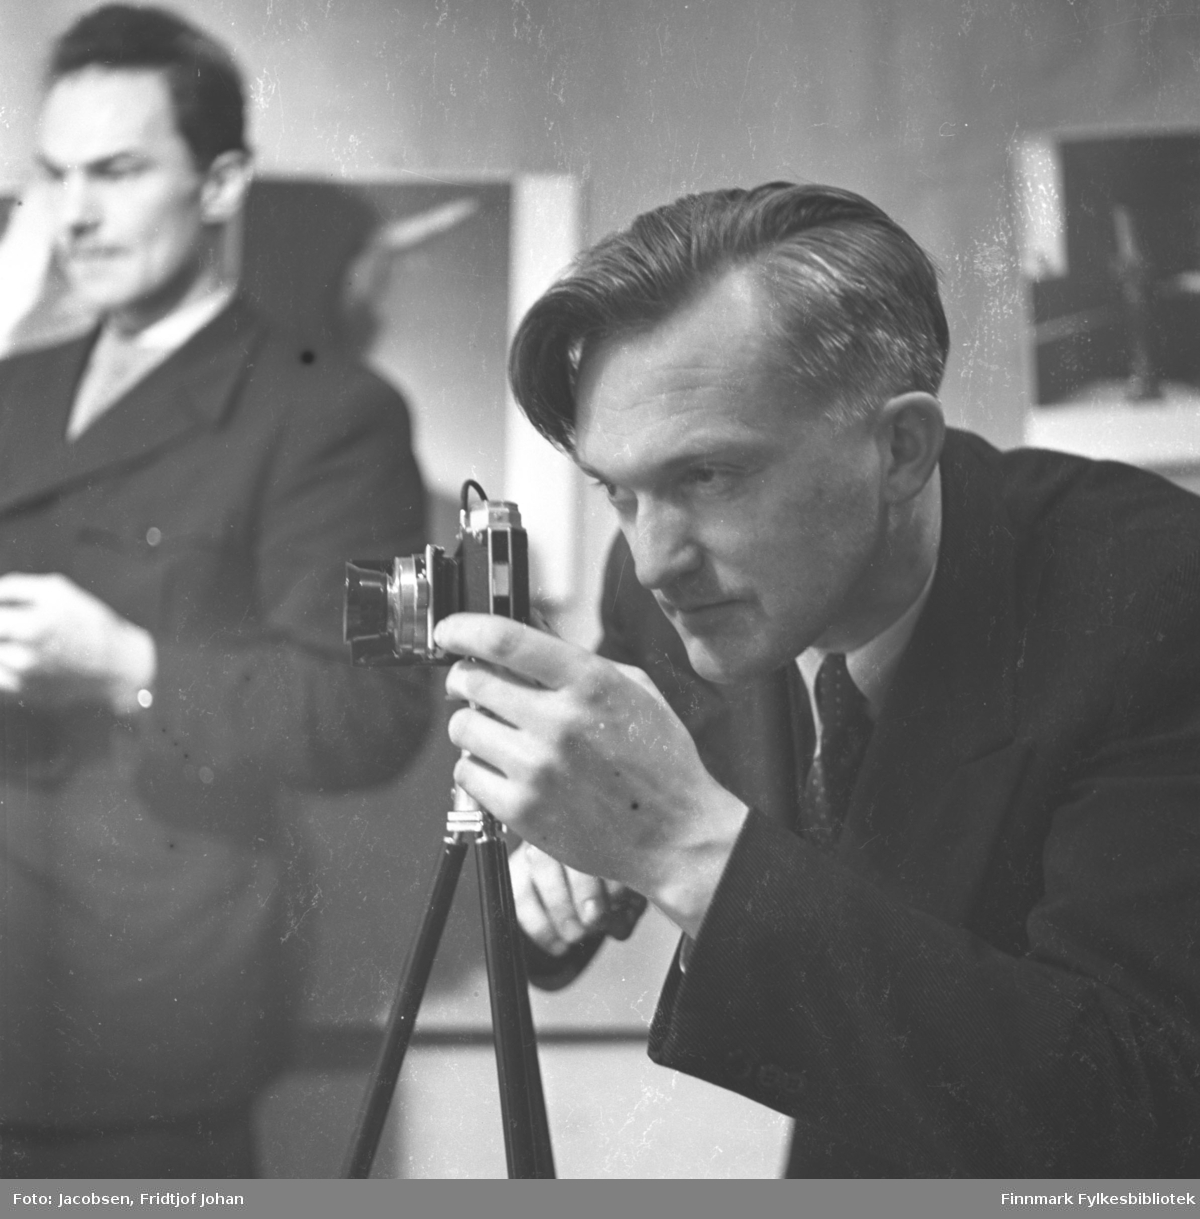 Fridtjof Jacobsen fotografert av Alf Edvard Jacobsen mens han selv fotograferer. Han har en mørk dress med hvit skjorte og slips på seg. Kameraet står på et stativ. En mann i mørk dress, hvit skjorte og slips står til venstre på bildet.